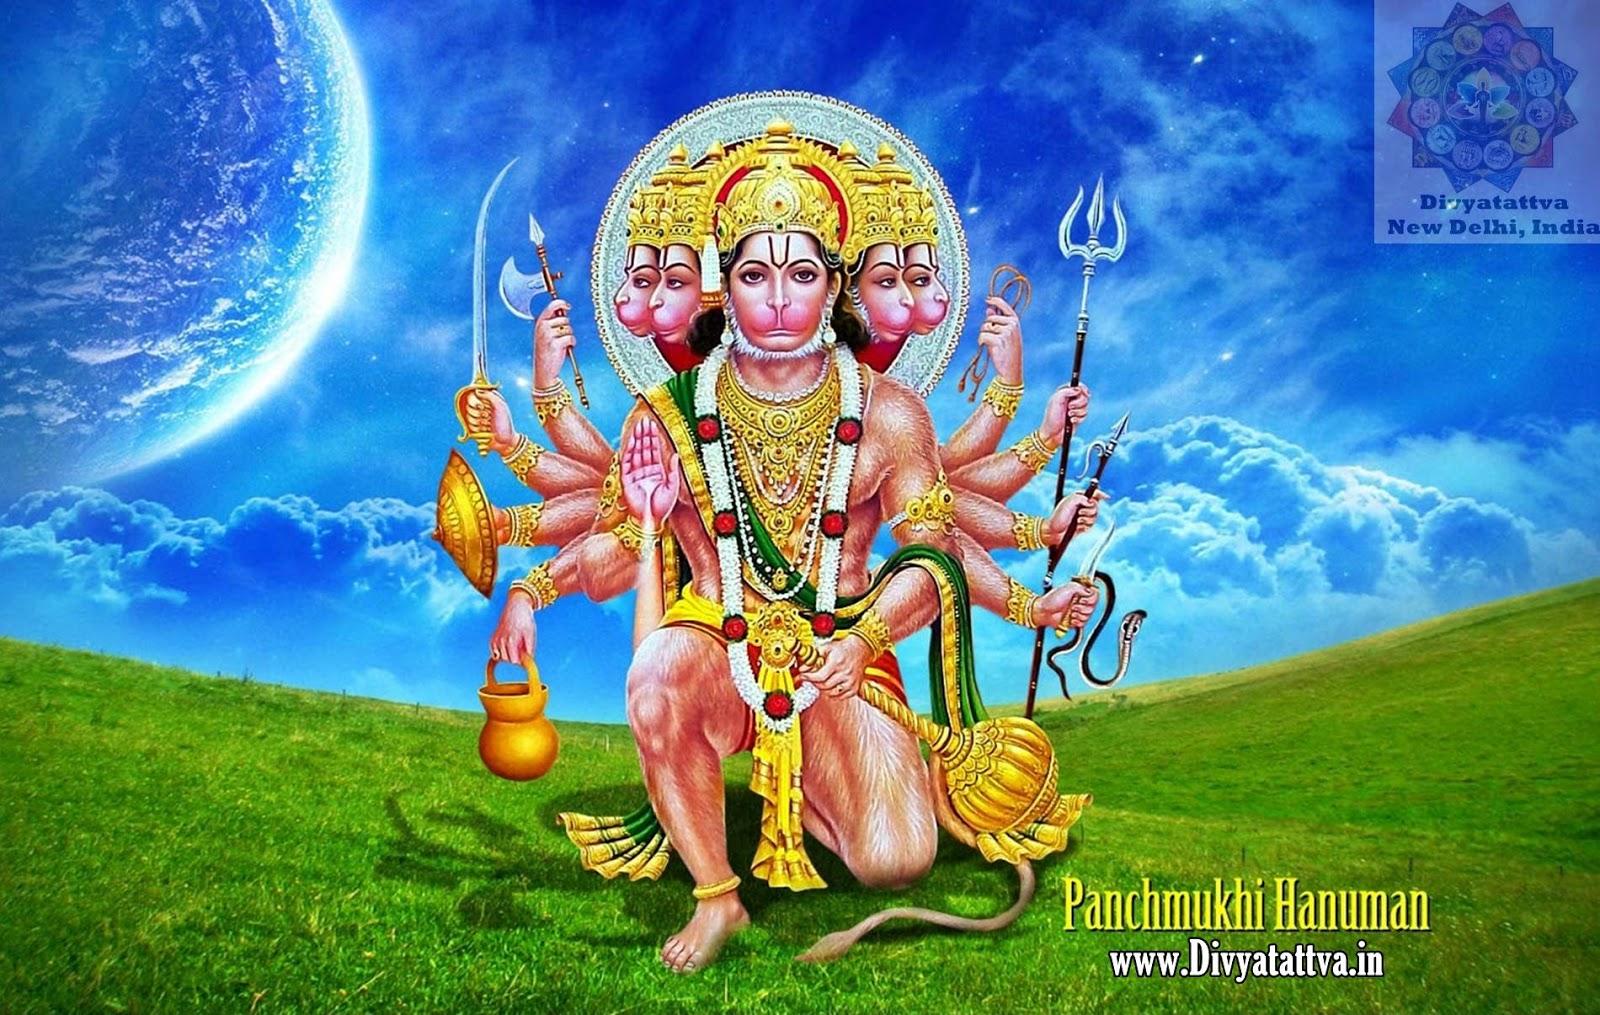 Panchmukhi Hanuman Wallpaper, Free 4k Ultra HD Lord